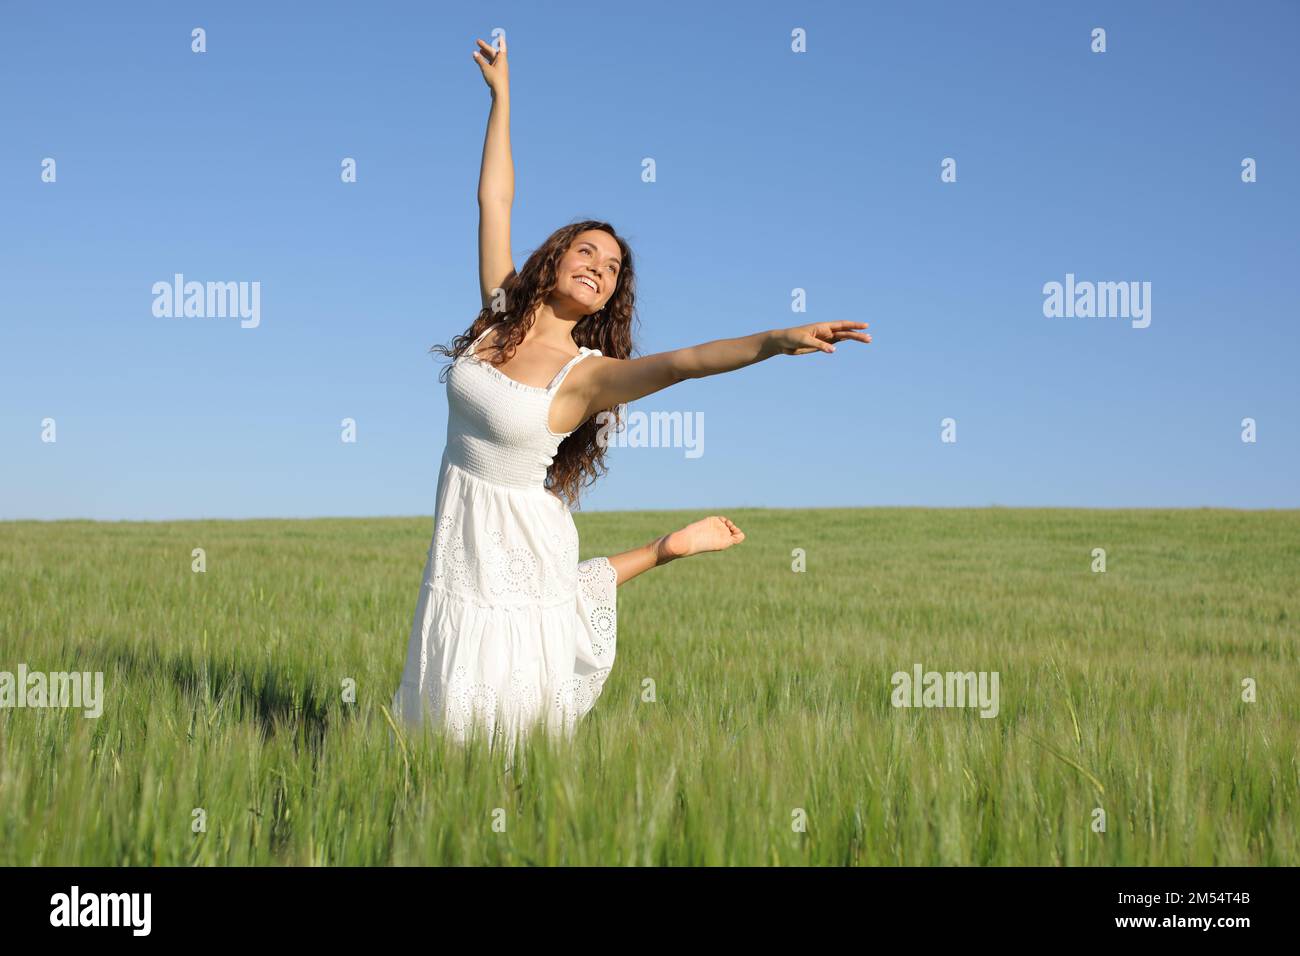 Glückliche Frau mit weißem Kleid, die auf einem grünen Weizenfeld tanzt Stockfoto